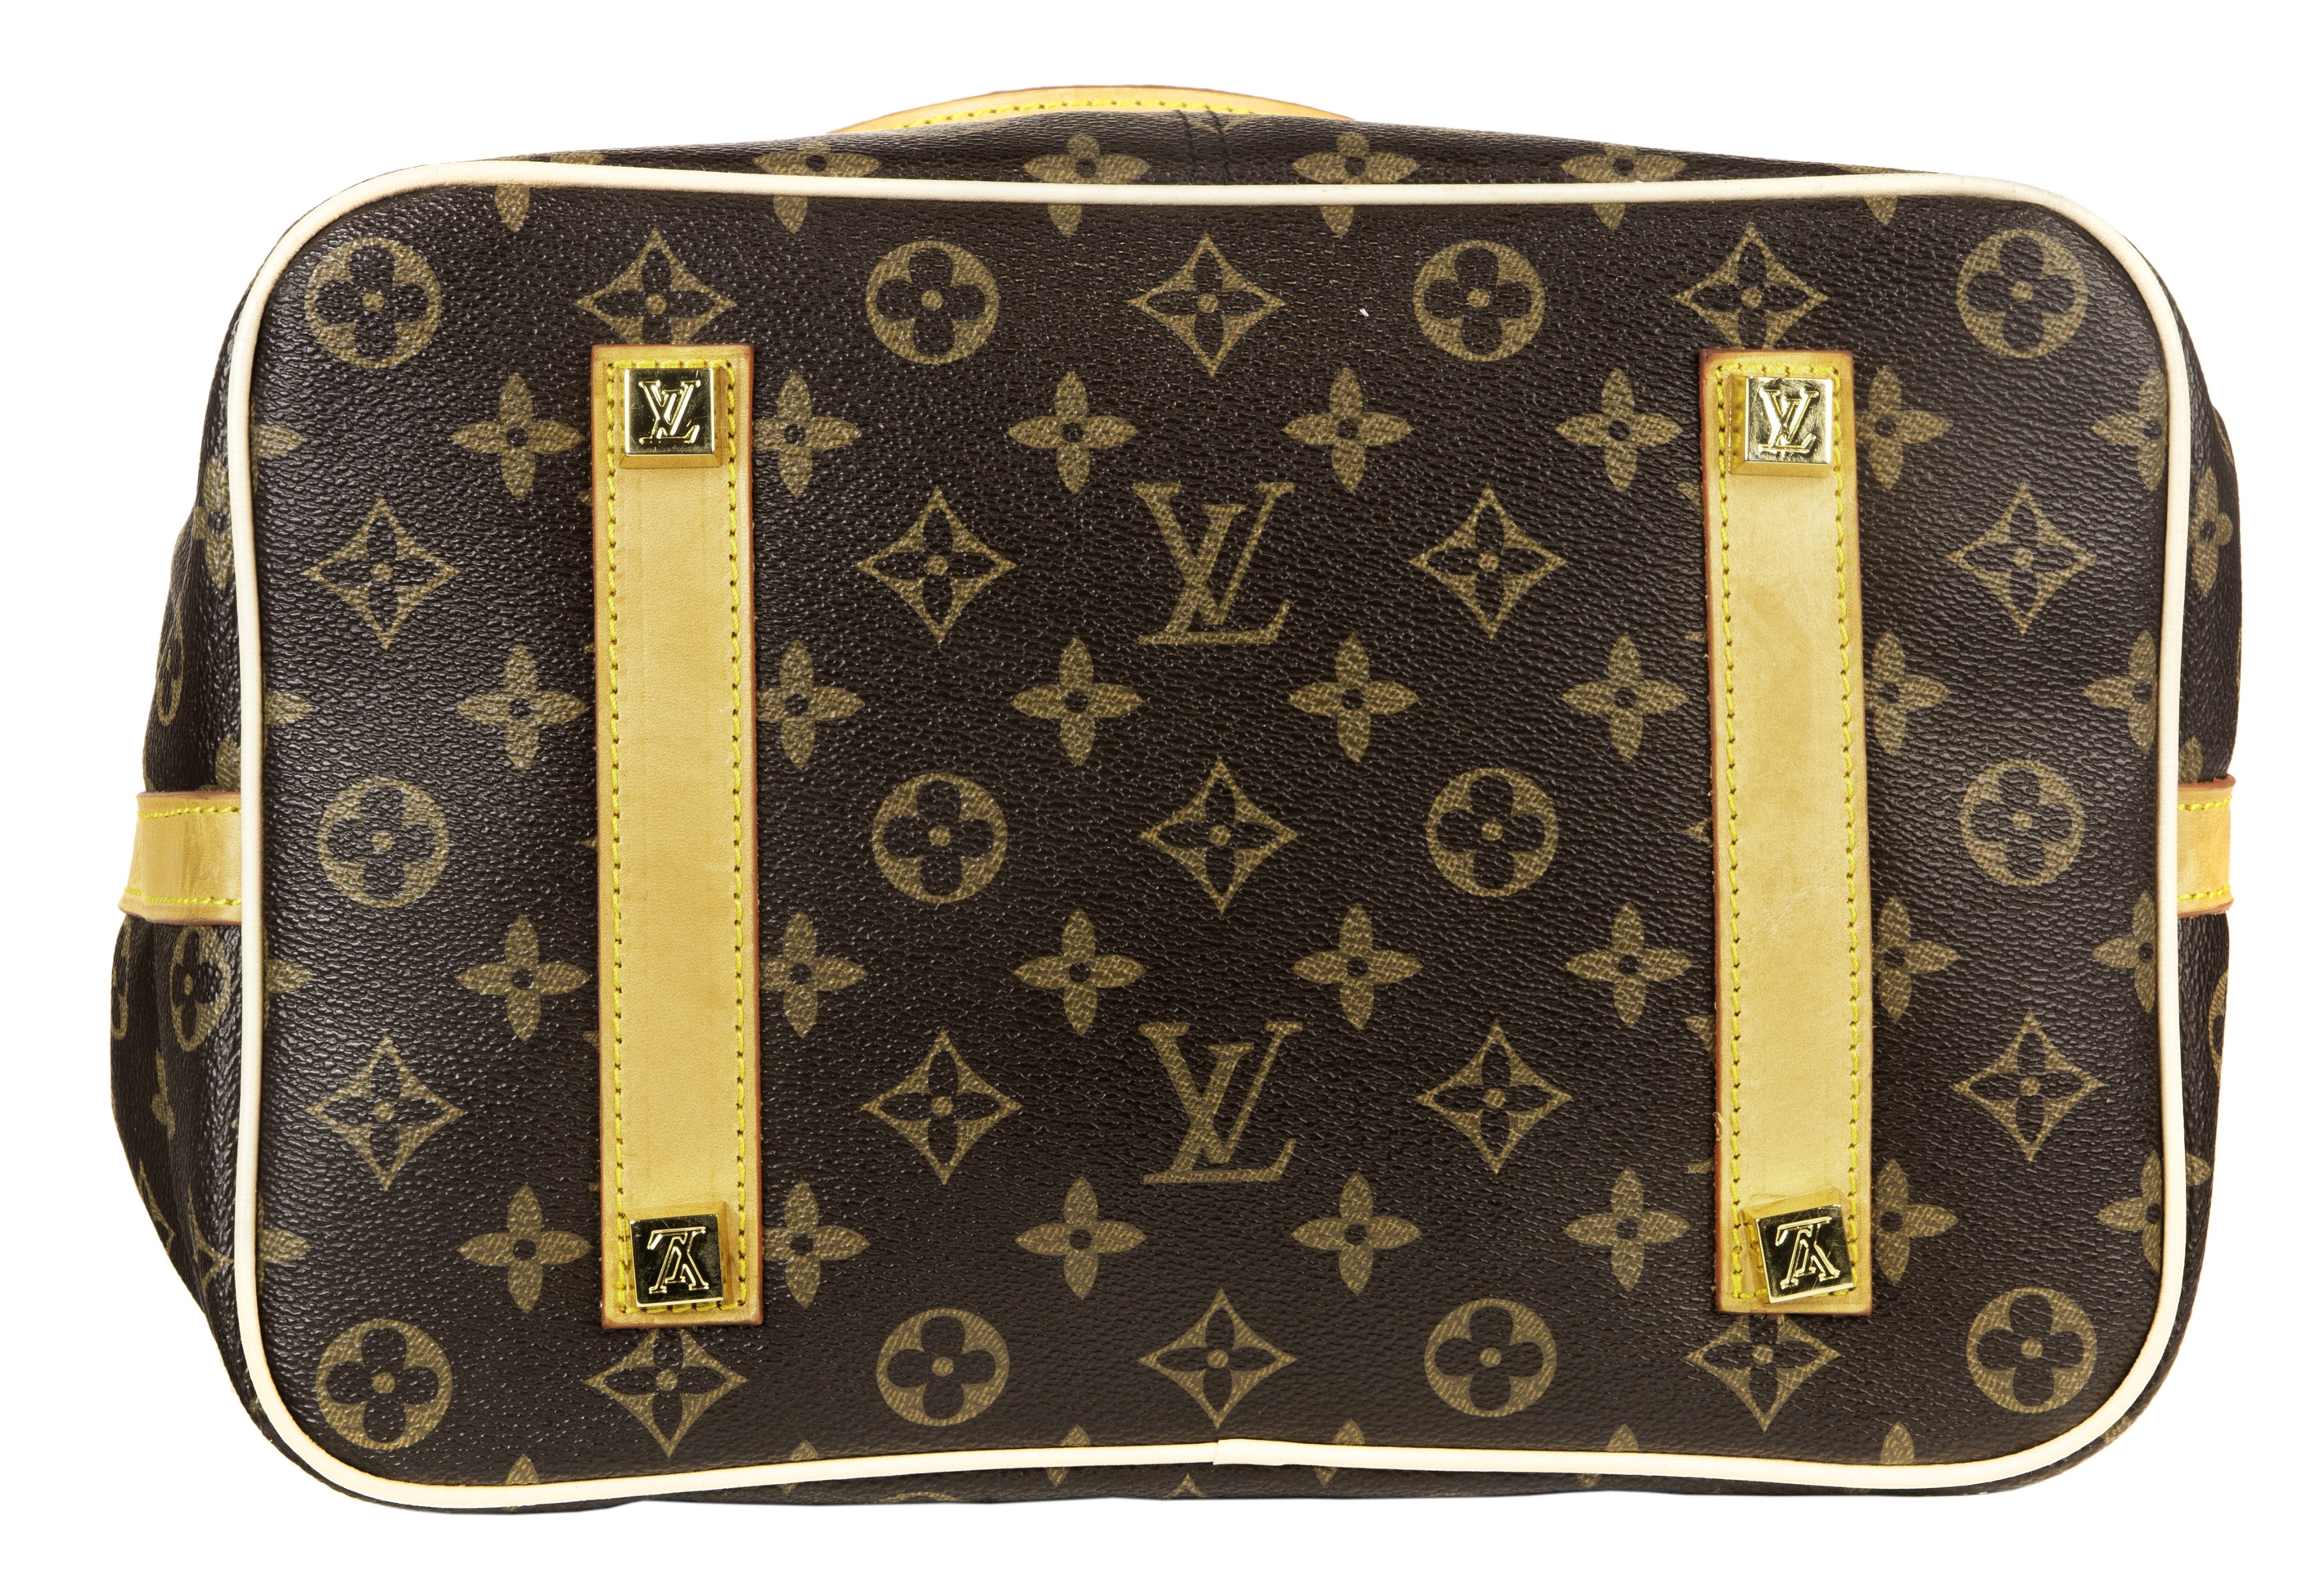 Sold at Auction: Louis Vuitton, LOUIS VUITTON, BOSPHORE 45 TROLLEY CASE